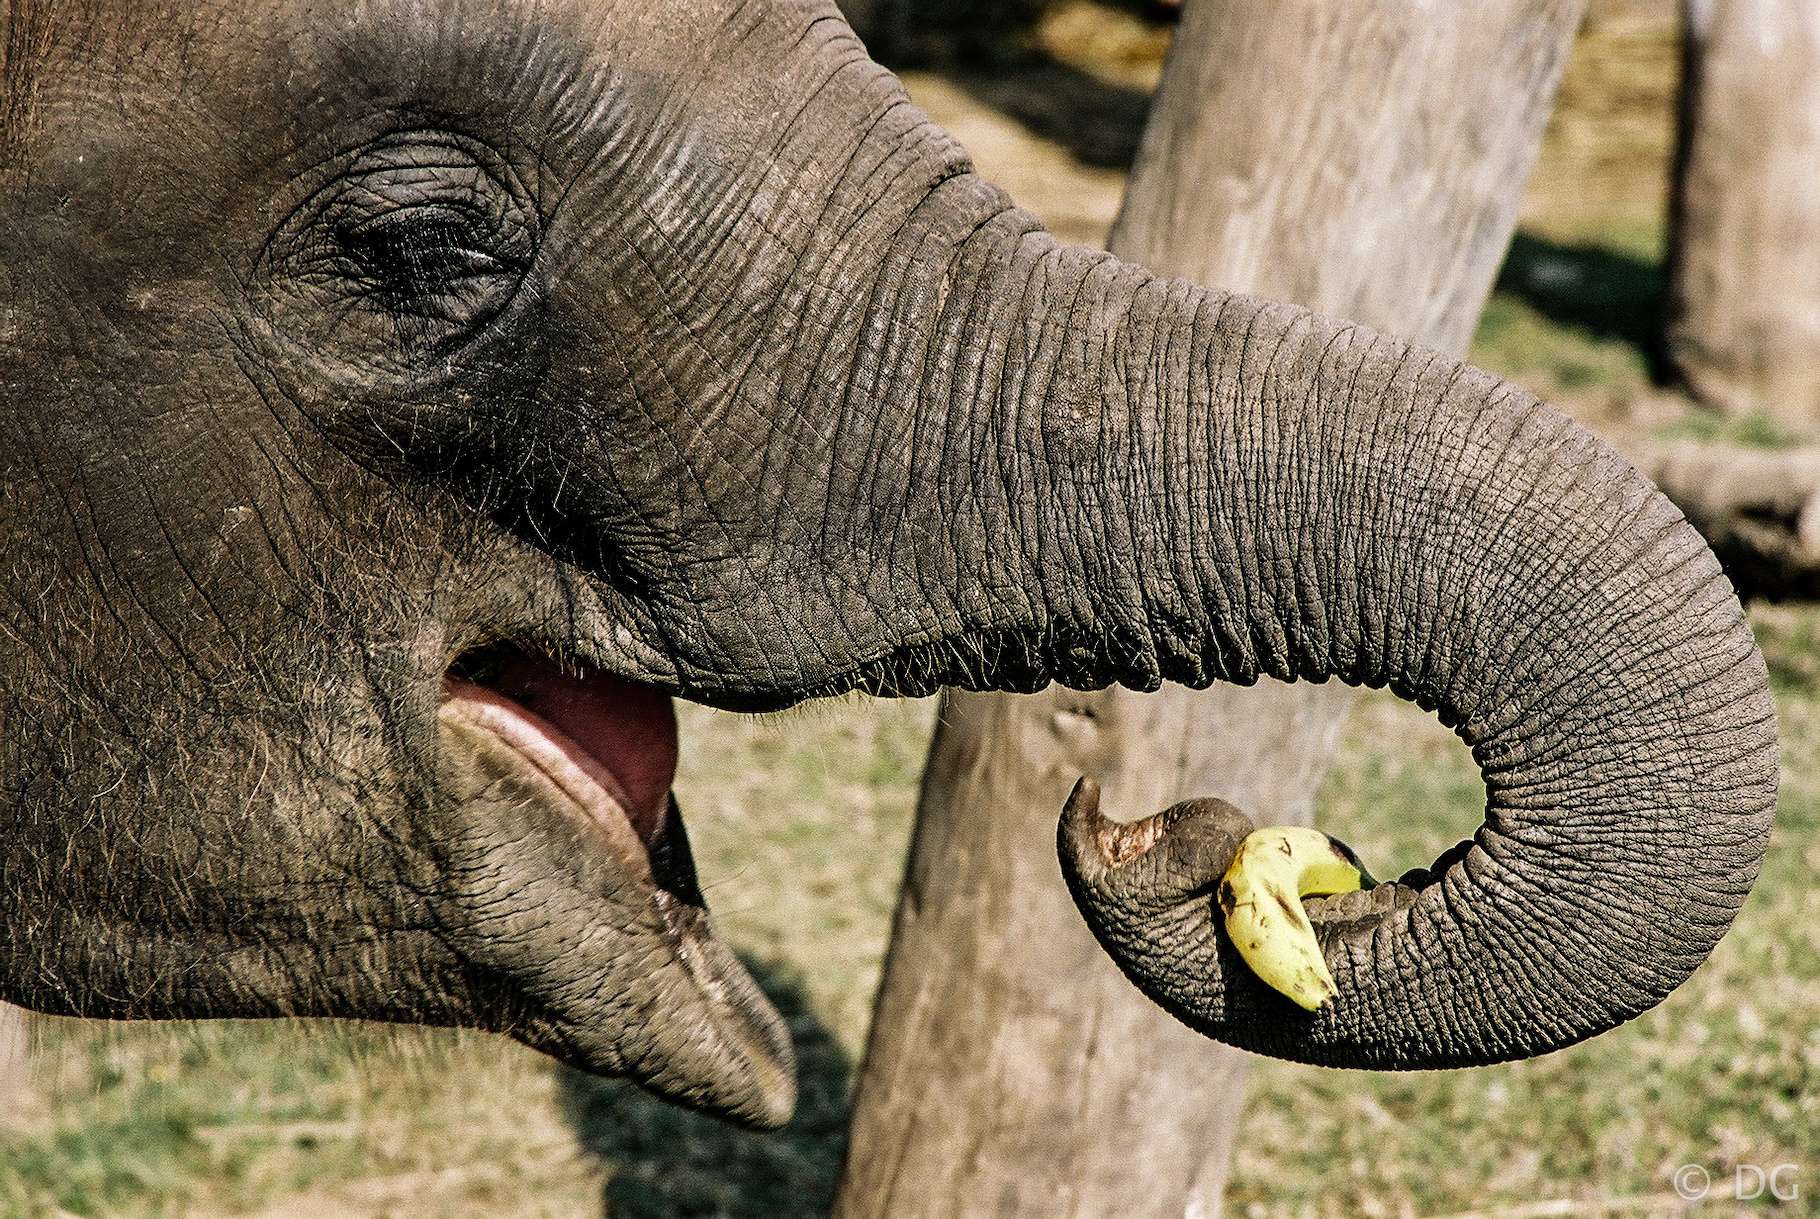 Un éléphant a appris à éplucher une banane